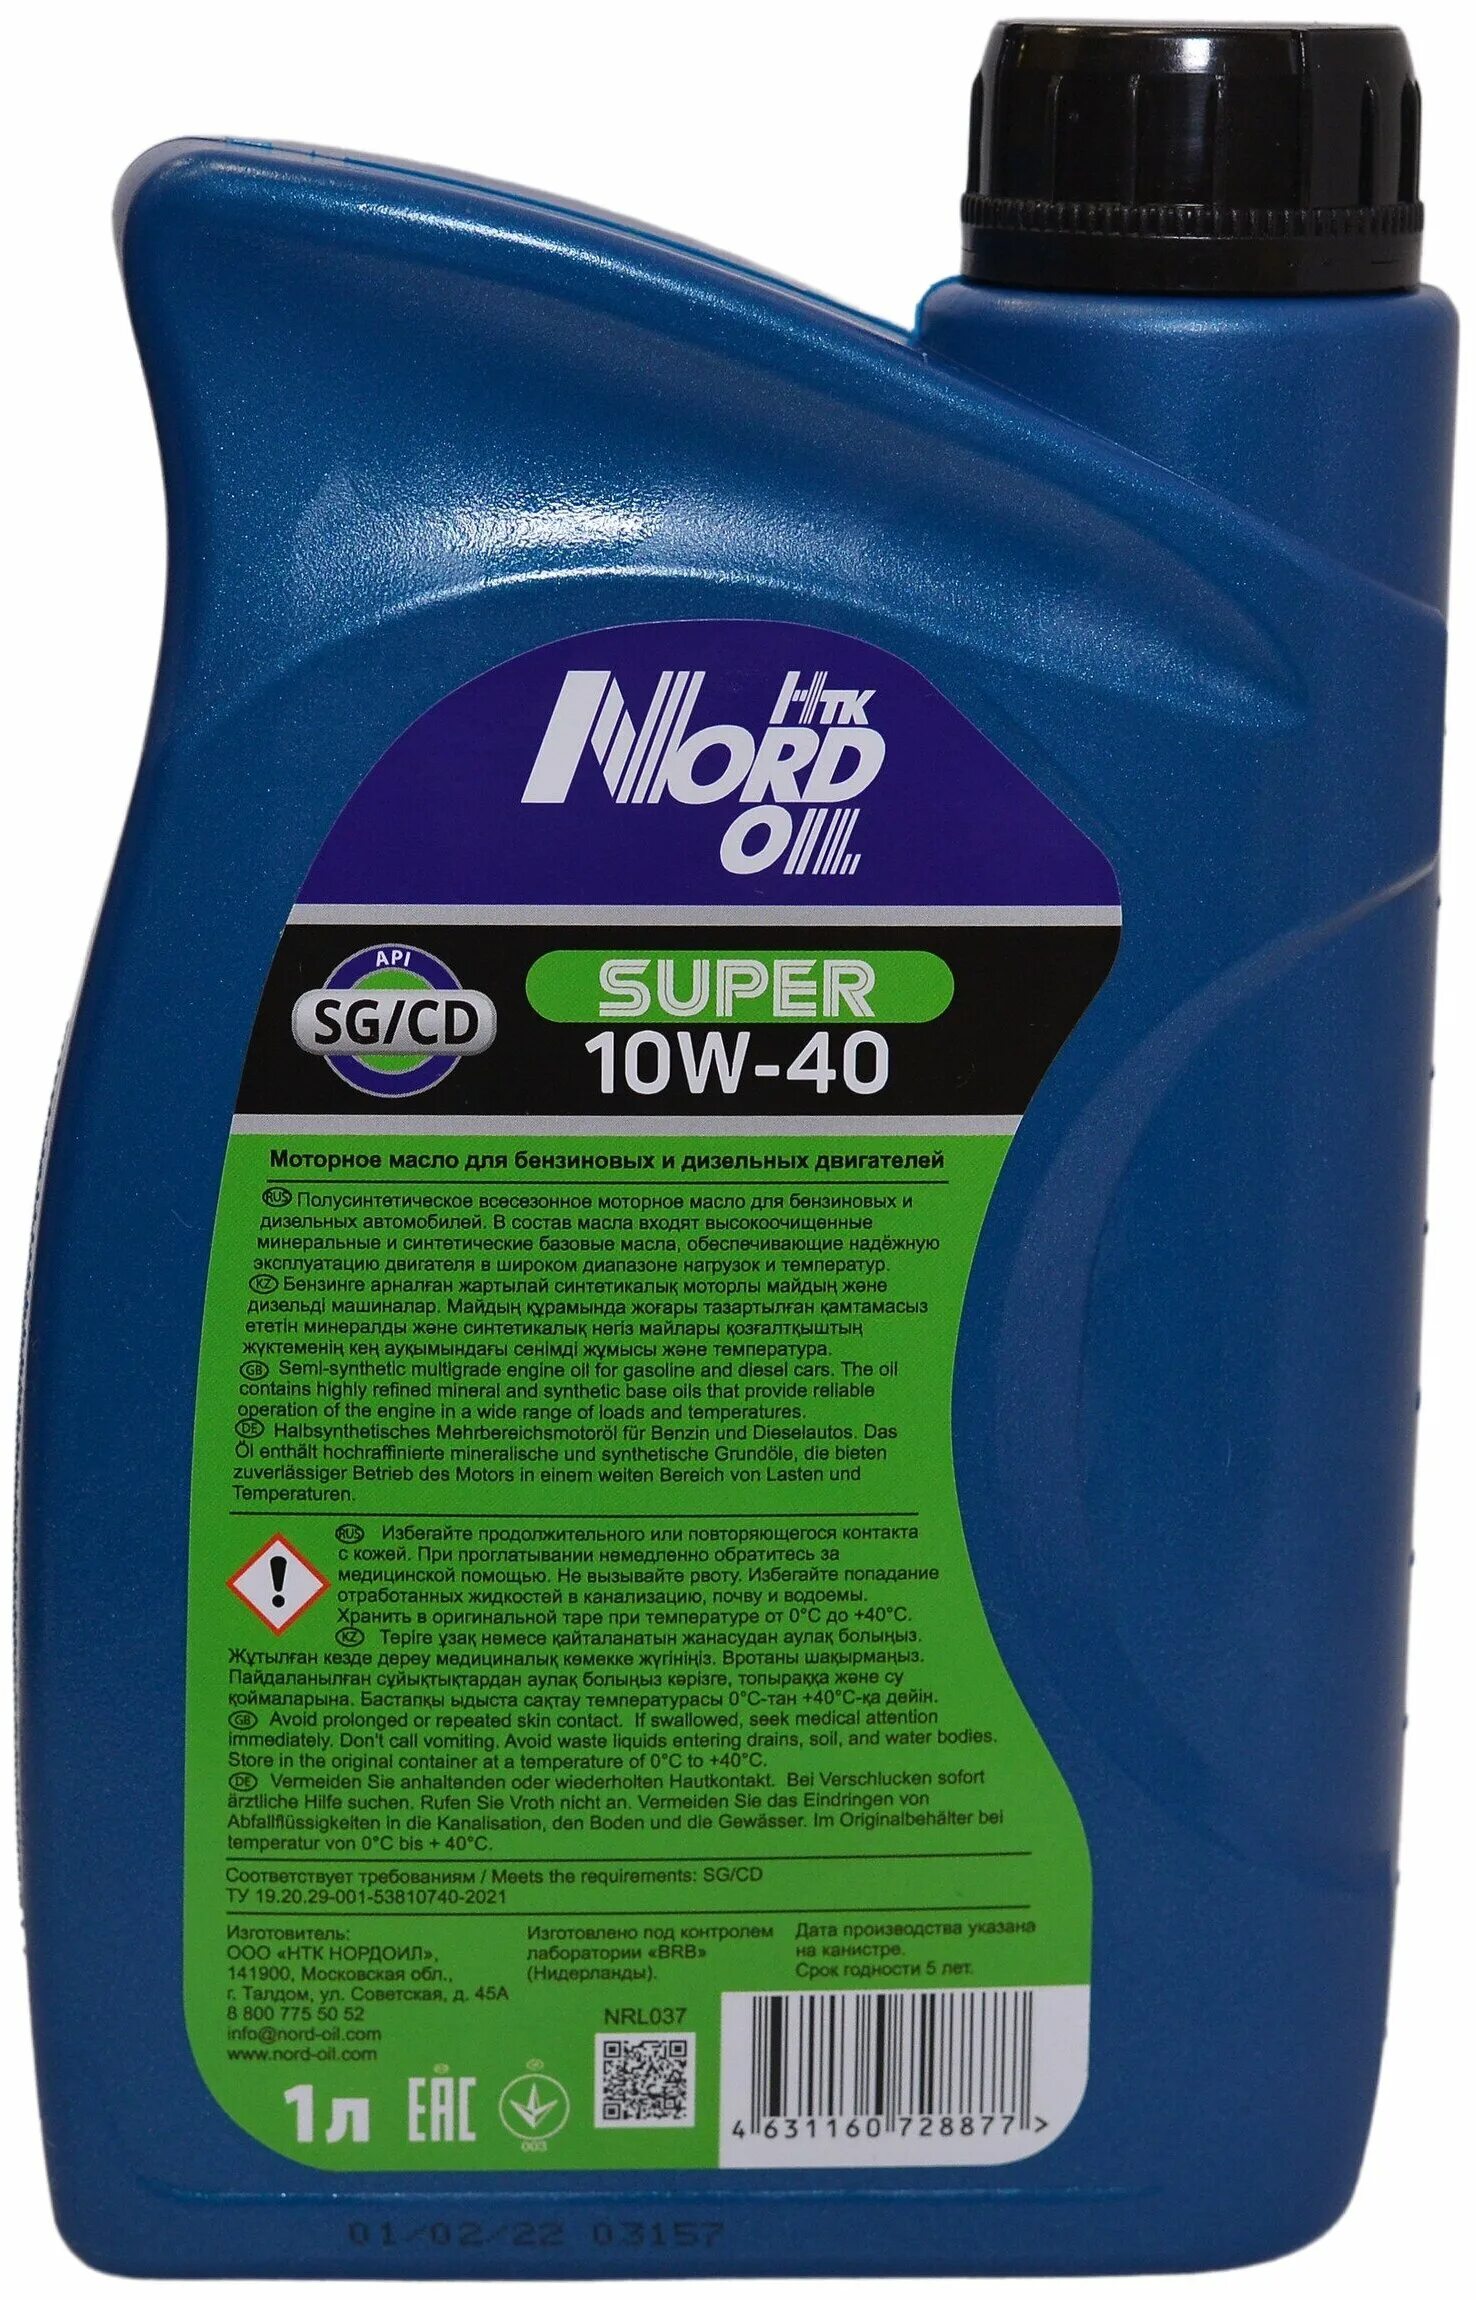 Машинное масло отзывы. Nord Oil super 10w-40 SG CD П С 4л. 10w40 Nord Oil super SG/CD масло моторное, 1 л. Nrl038 Nord Oil масло Nord Oil super 10w-40 SG/CD 4л. Моторное масло super Hoss 10w40.